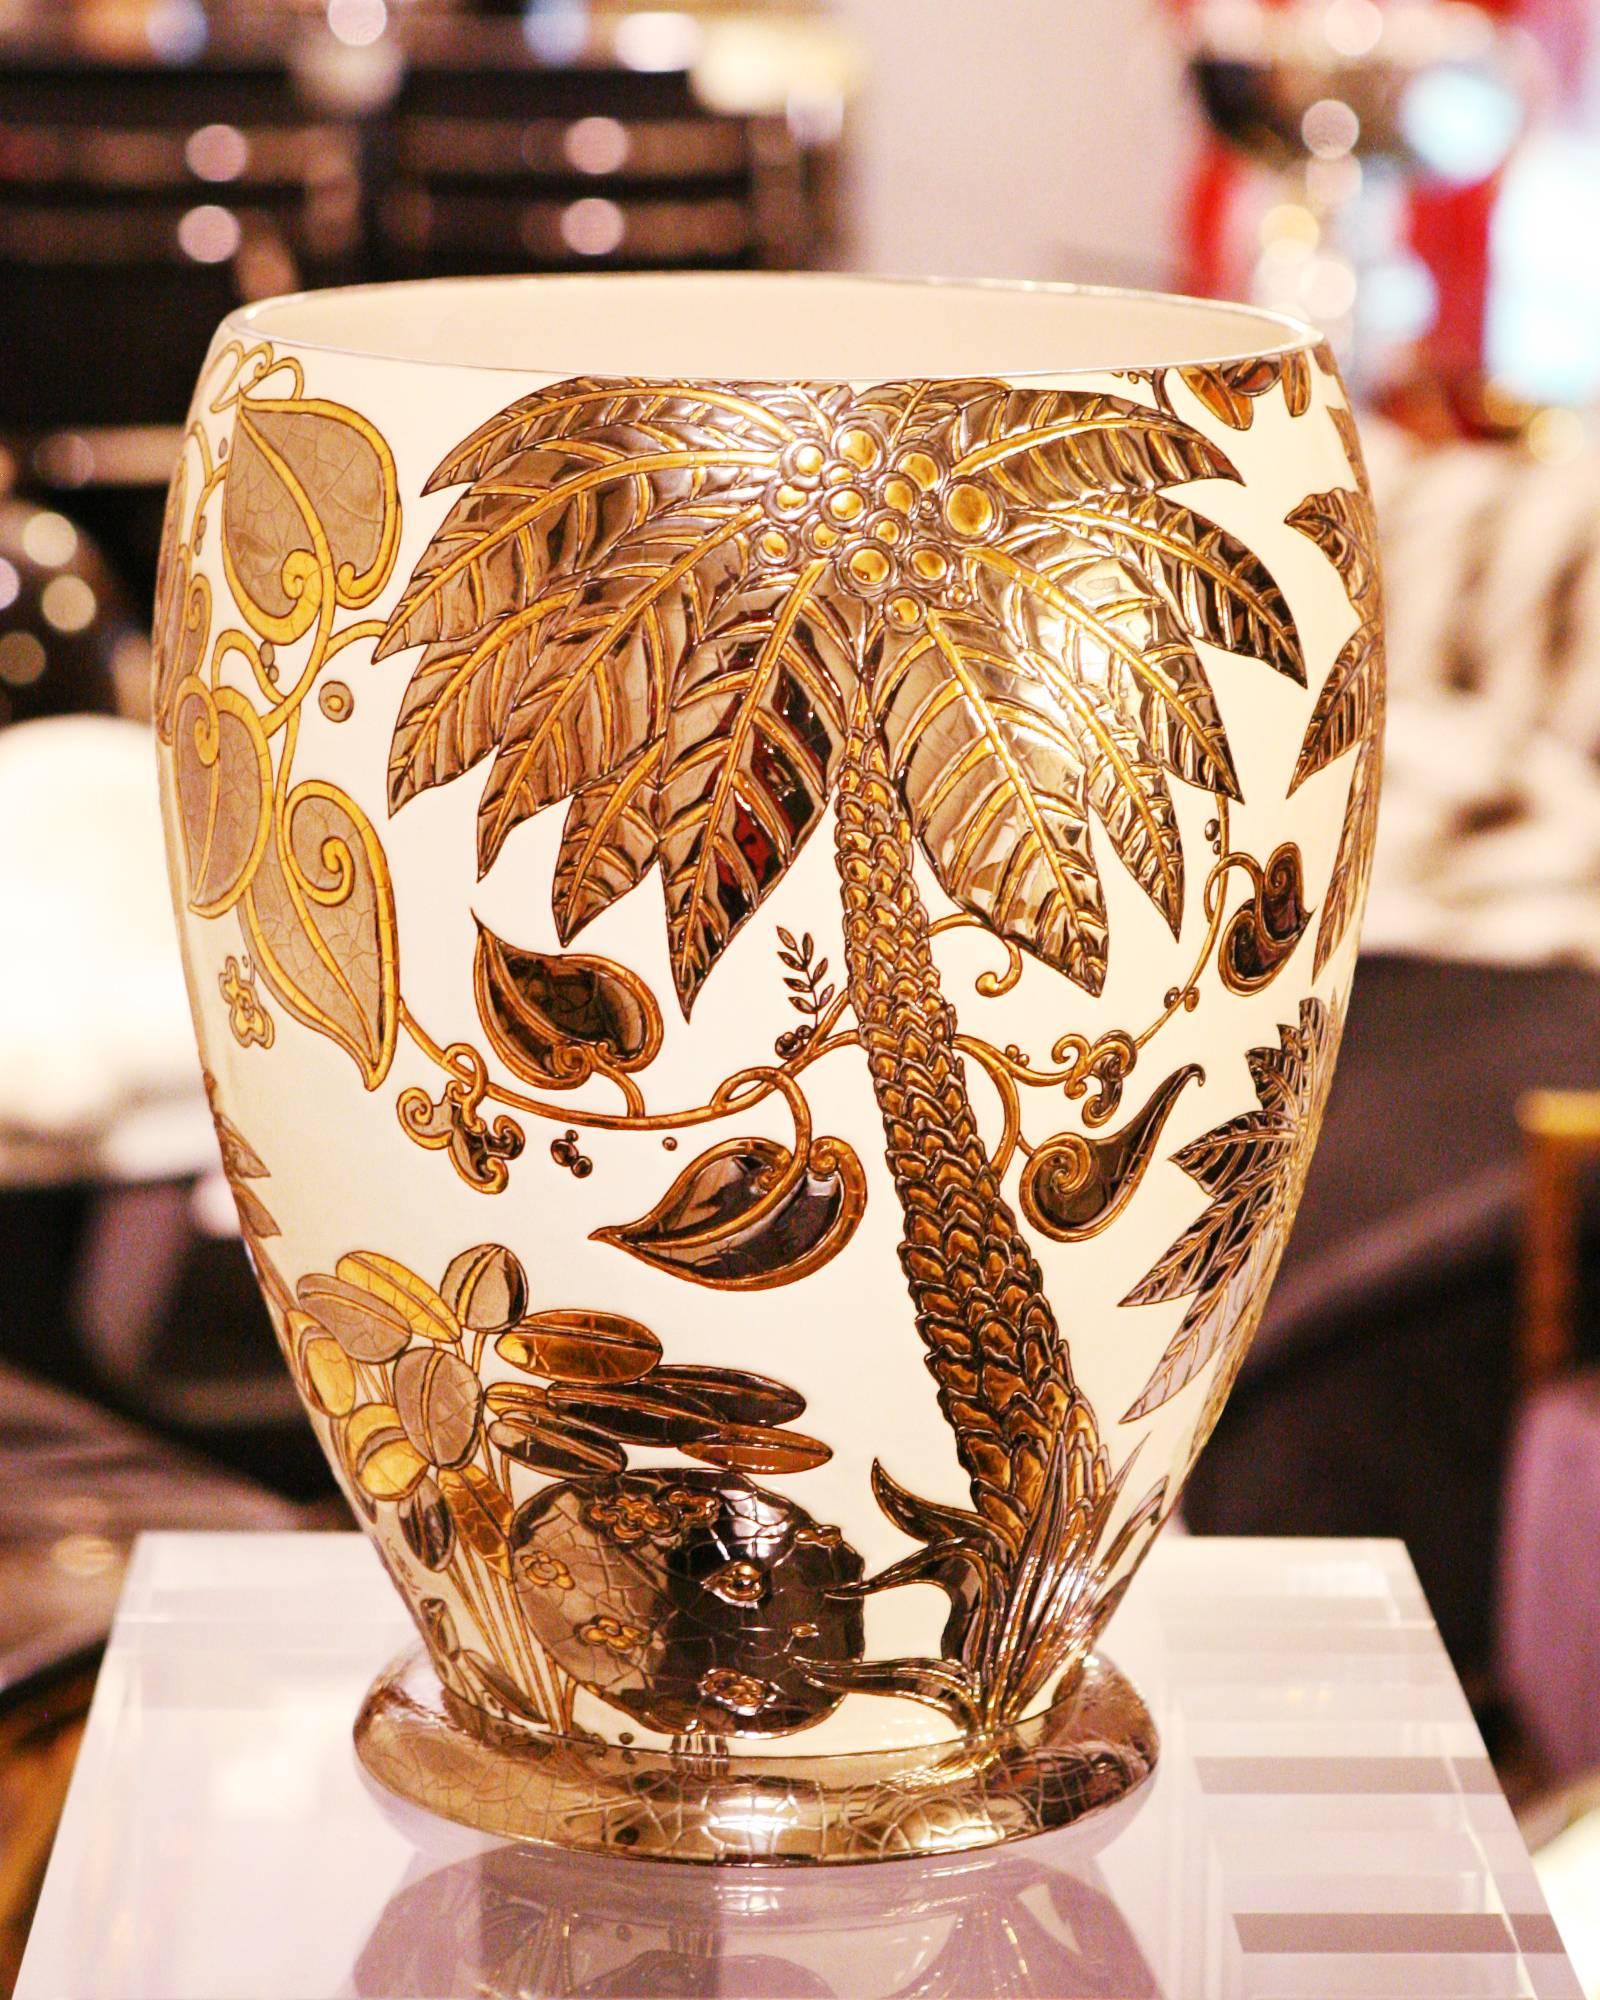 Vase Palmer weiß und vergoldet, Emaux de Longwy
aus Frankreich, außergewöhnliches Stück in limitierter Auflage, 
1/50 Stück. Eartenware handgefertigt. 

 